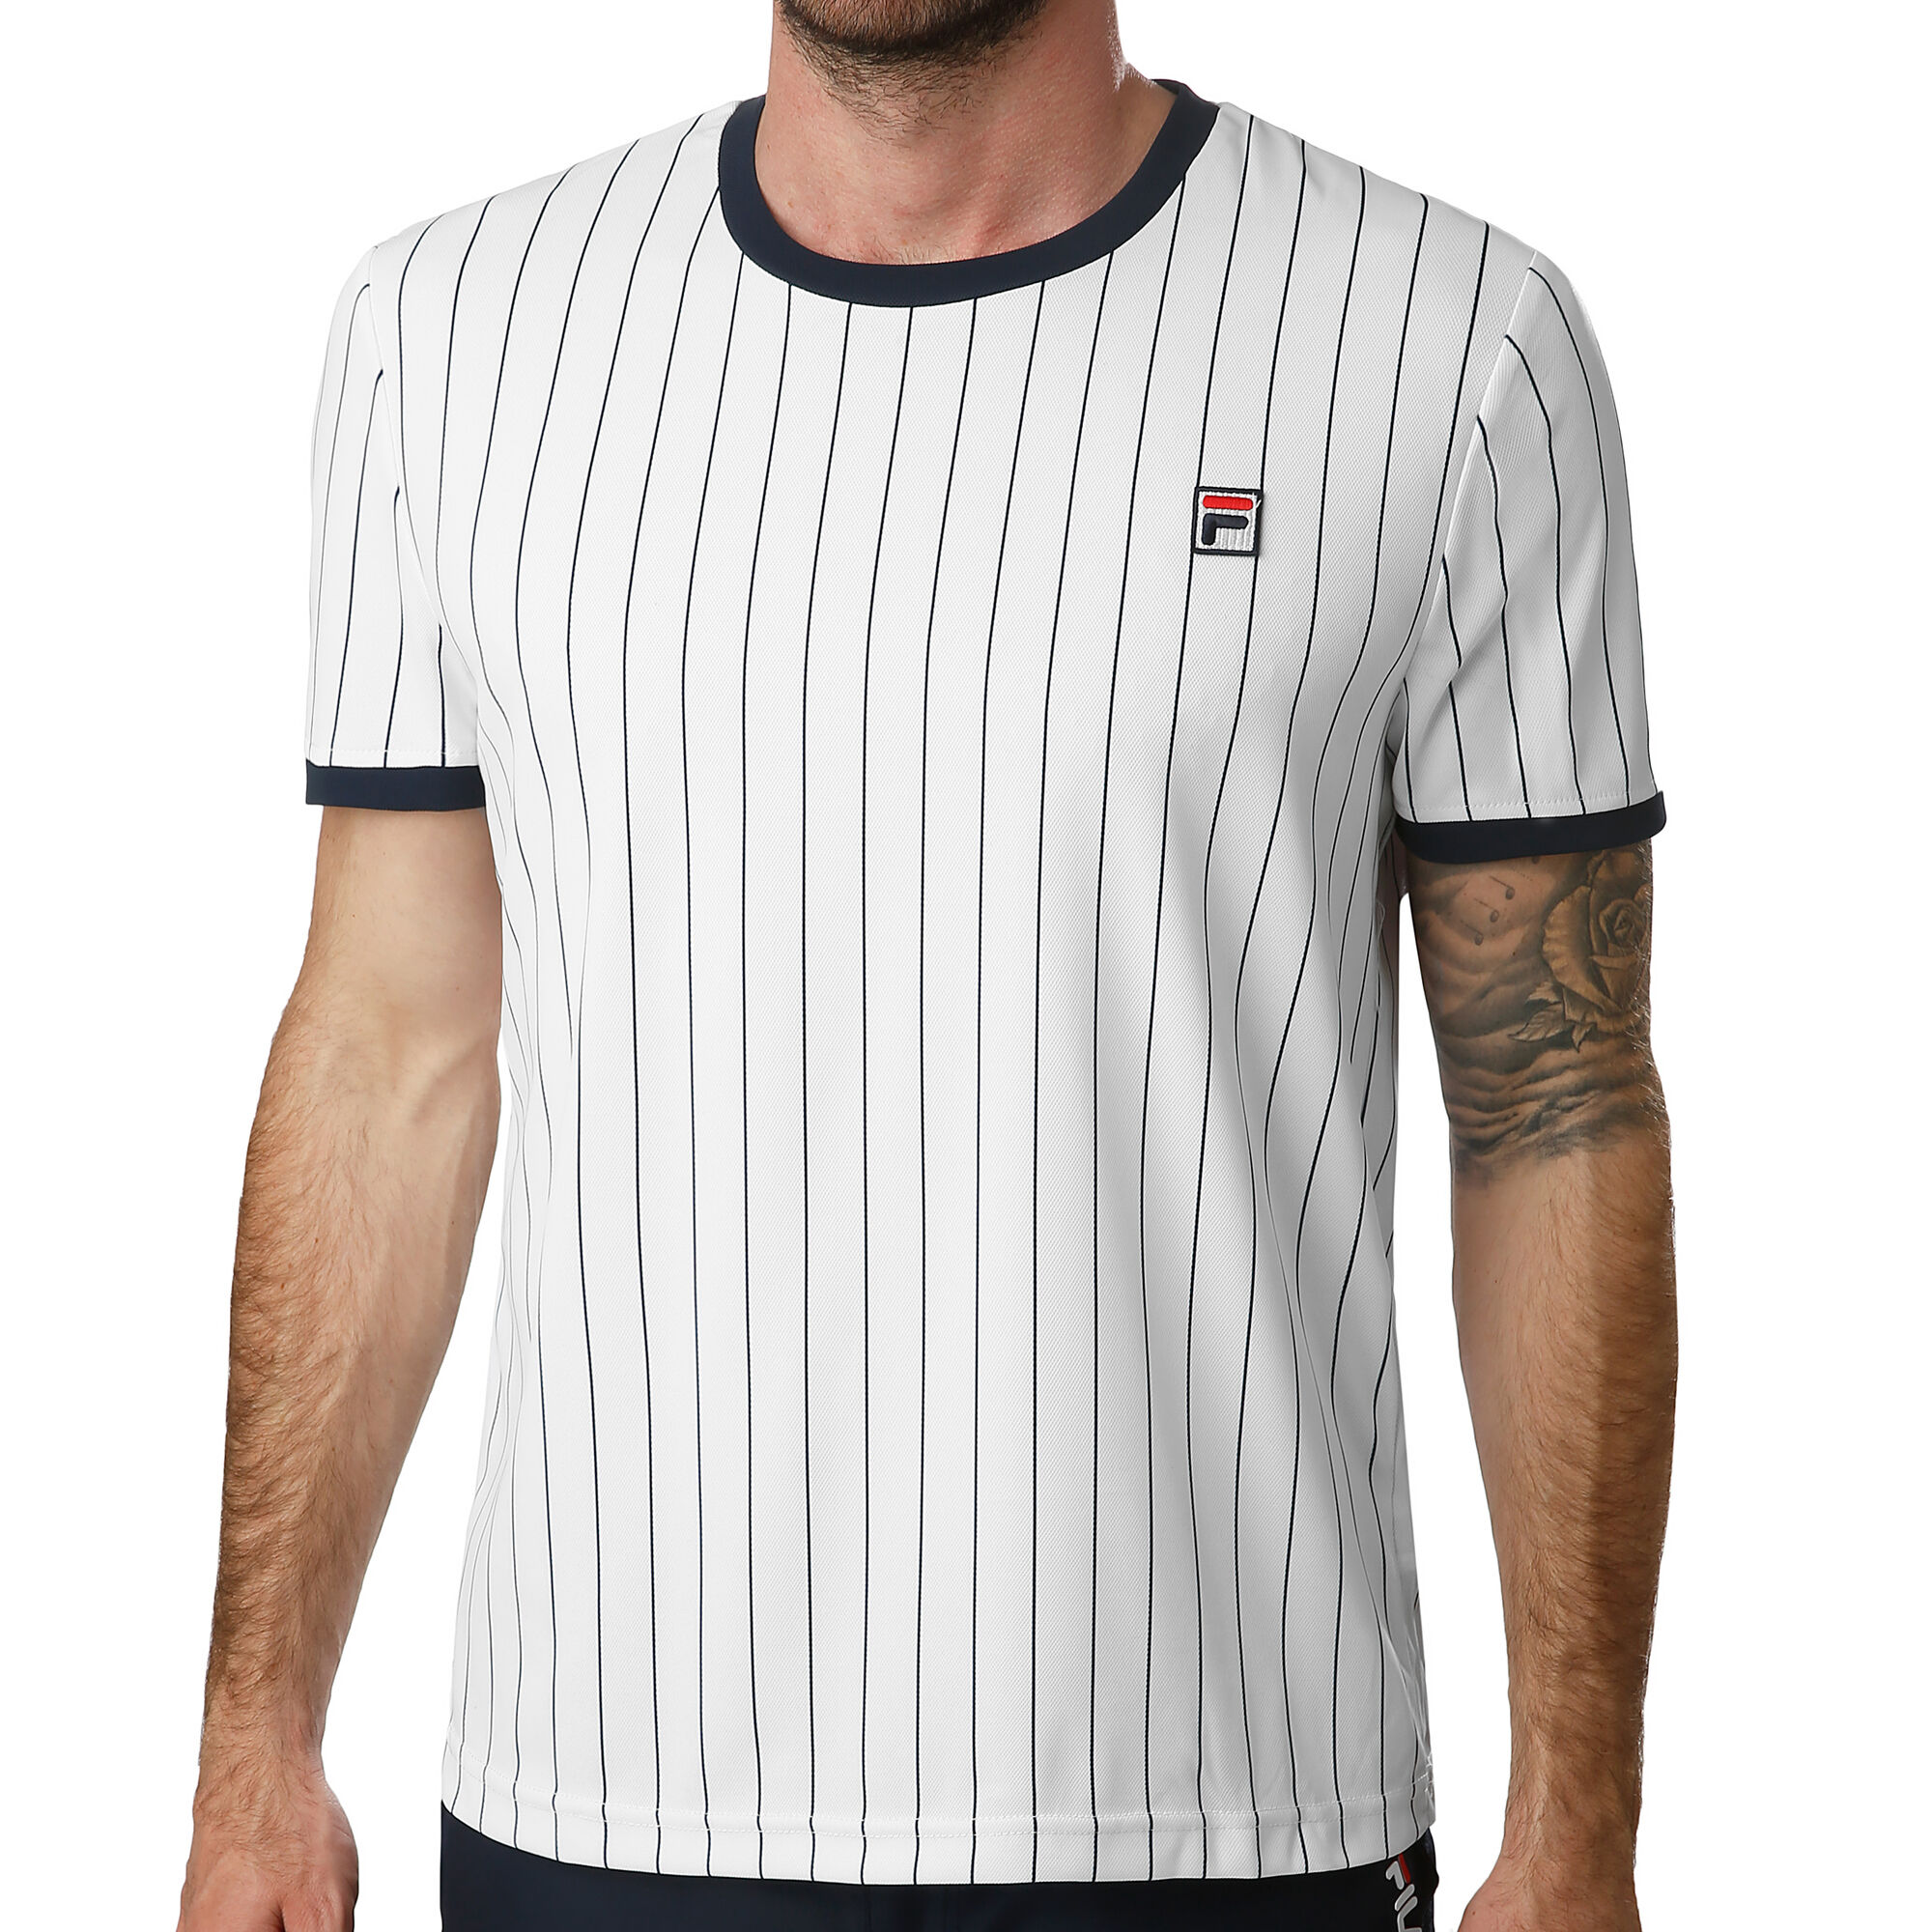 Stå op i stedet hagl akavet buy Fila Stripes T-Shirt Men - White, Dark Blue online | Tennis-Point